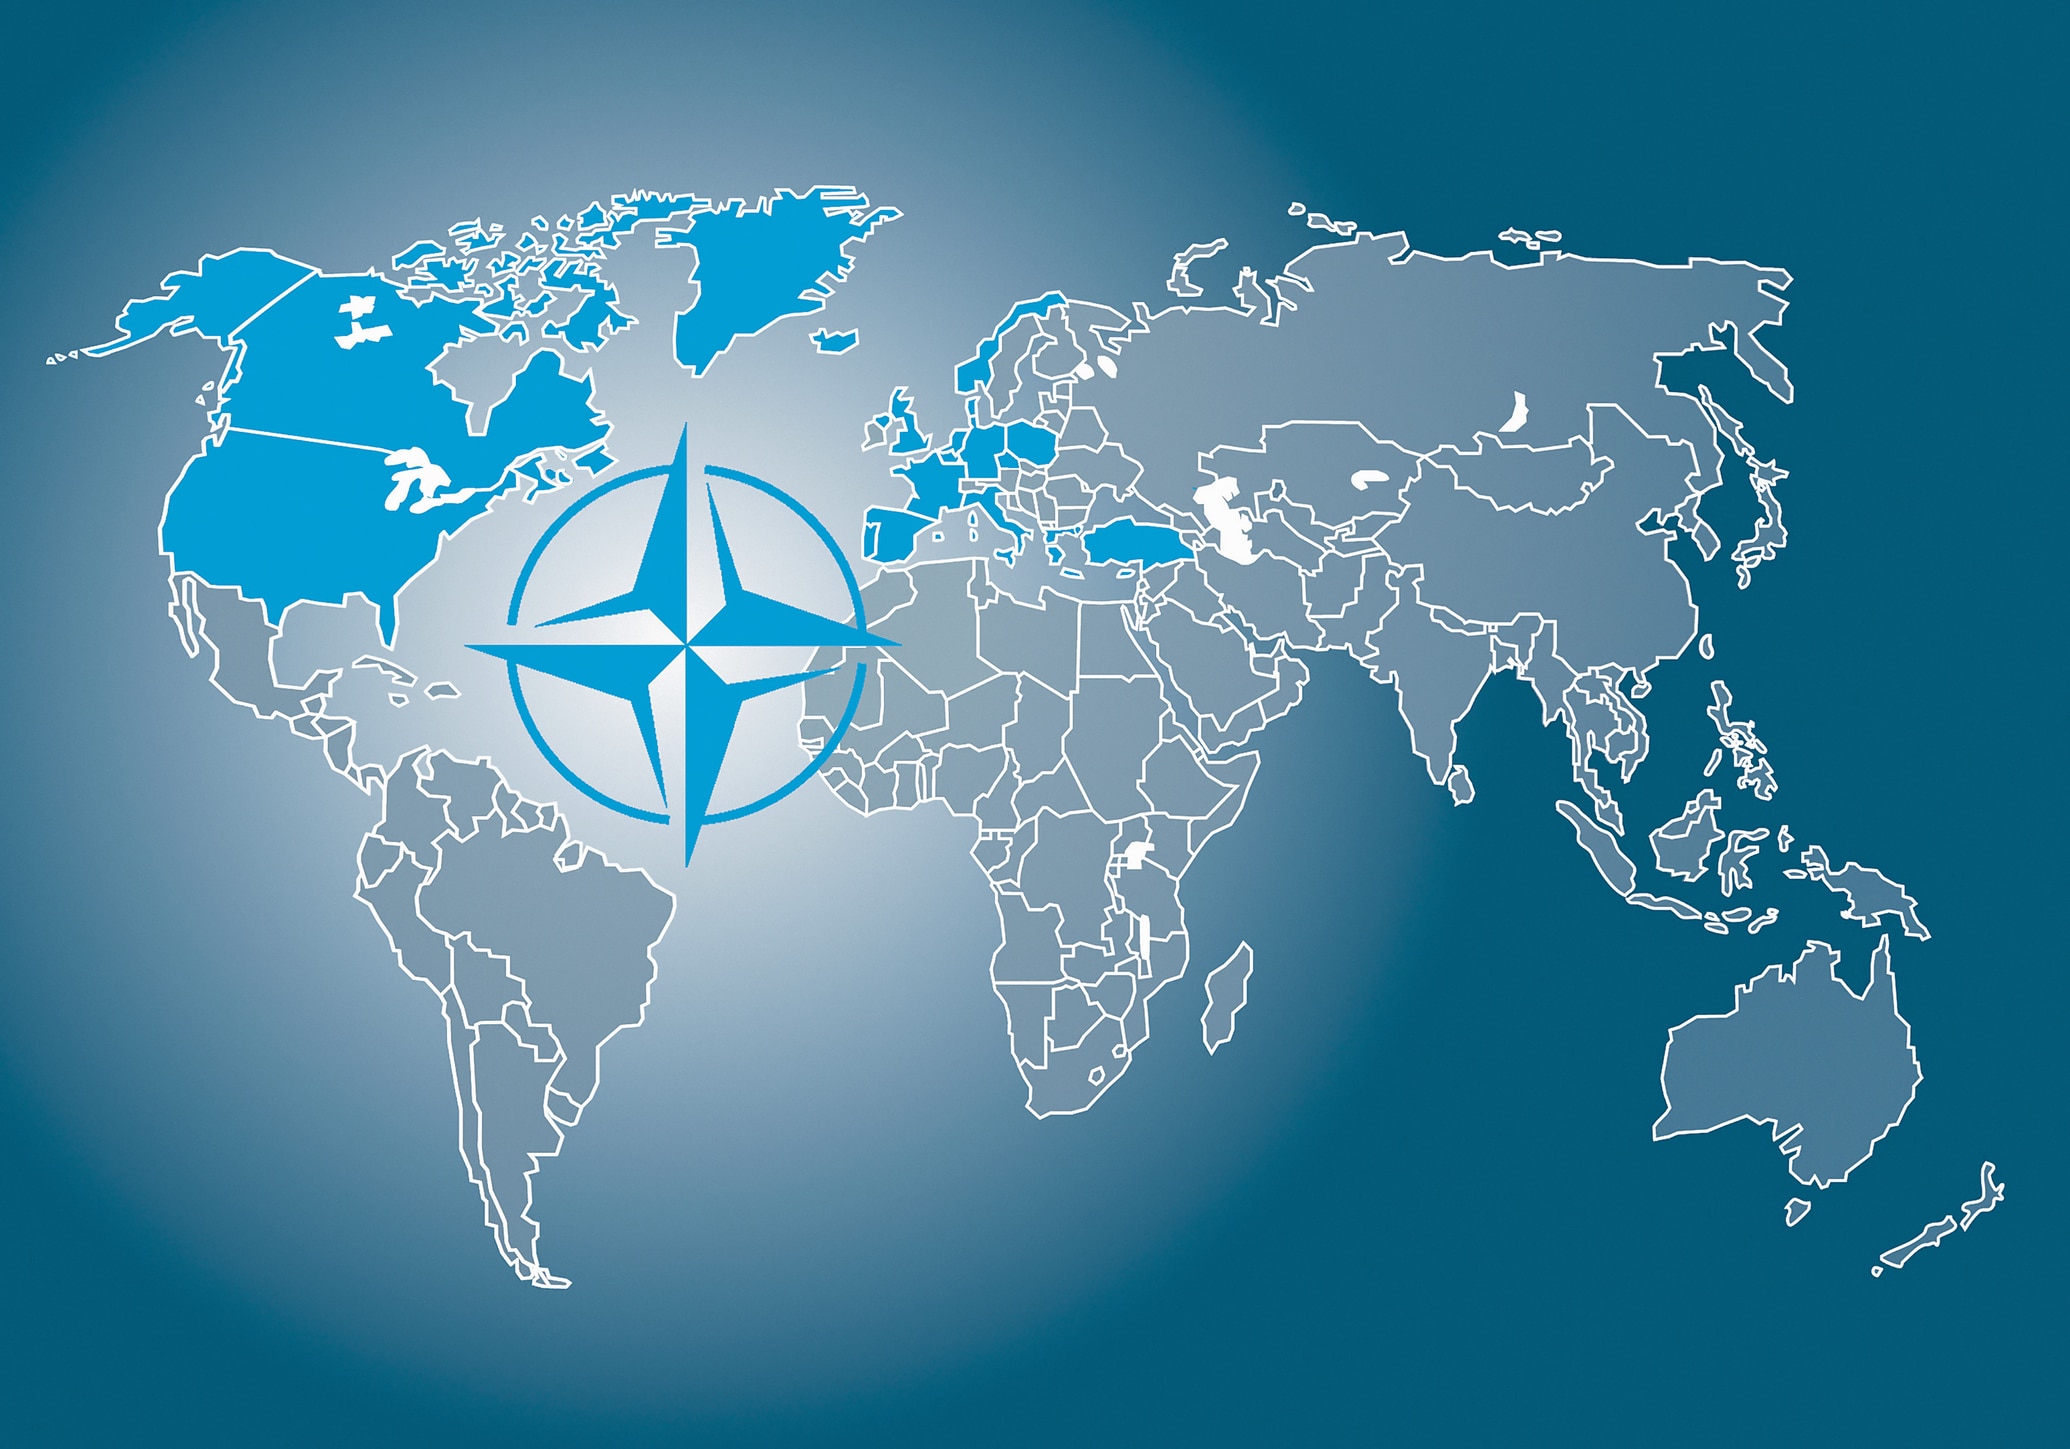 La NATO: paesi membri e sistema delle alleanze | Studenti.it